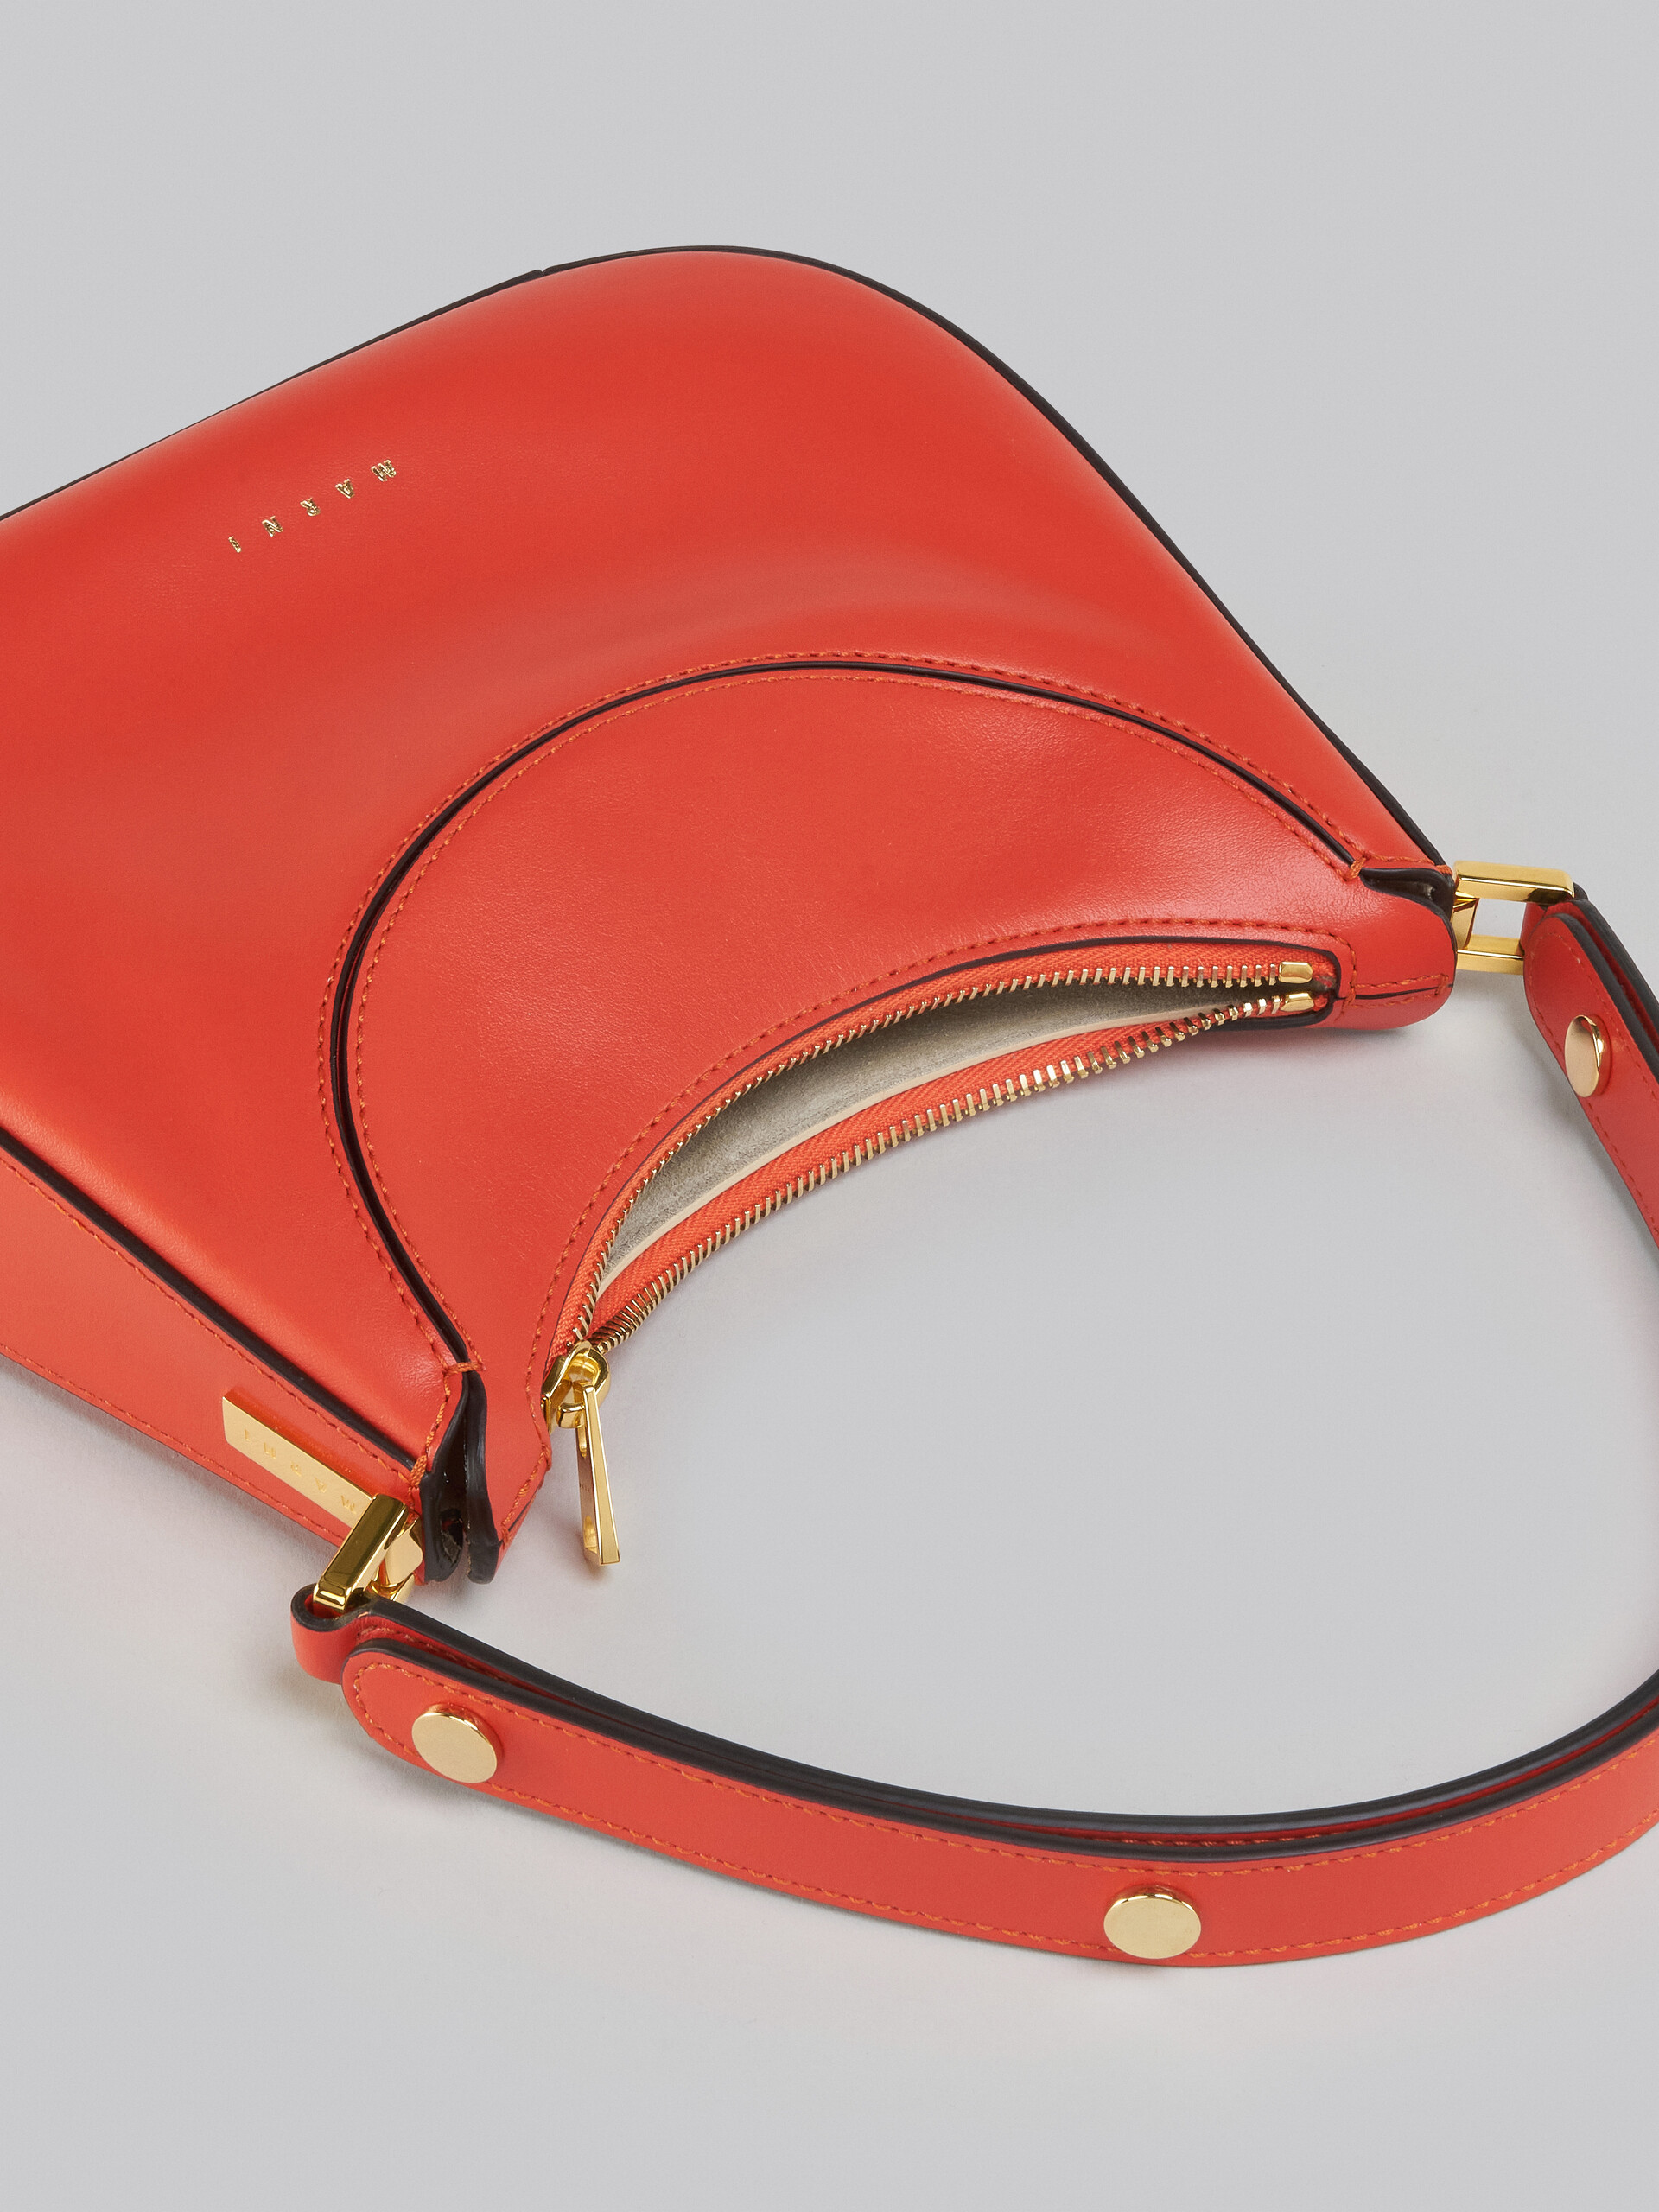 Milano Mini Bag in orange leather - Handbag - Image 4